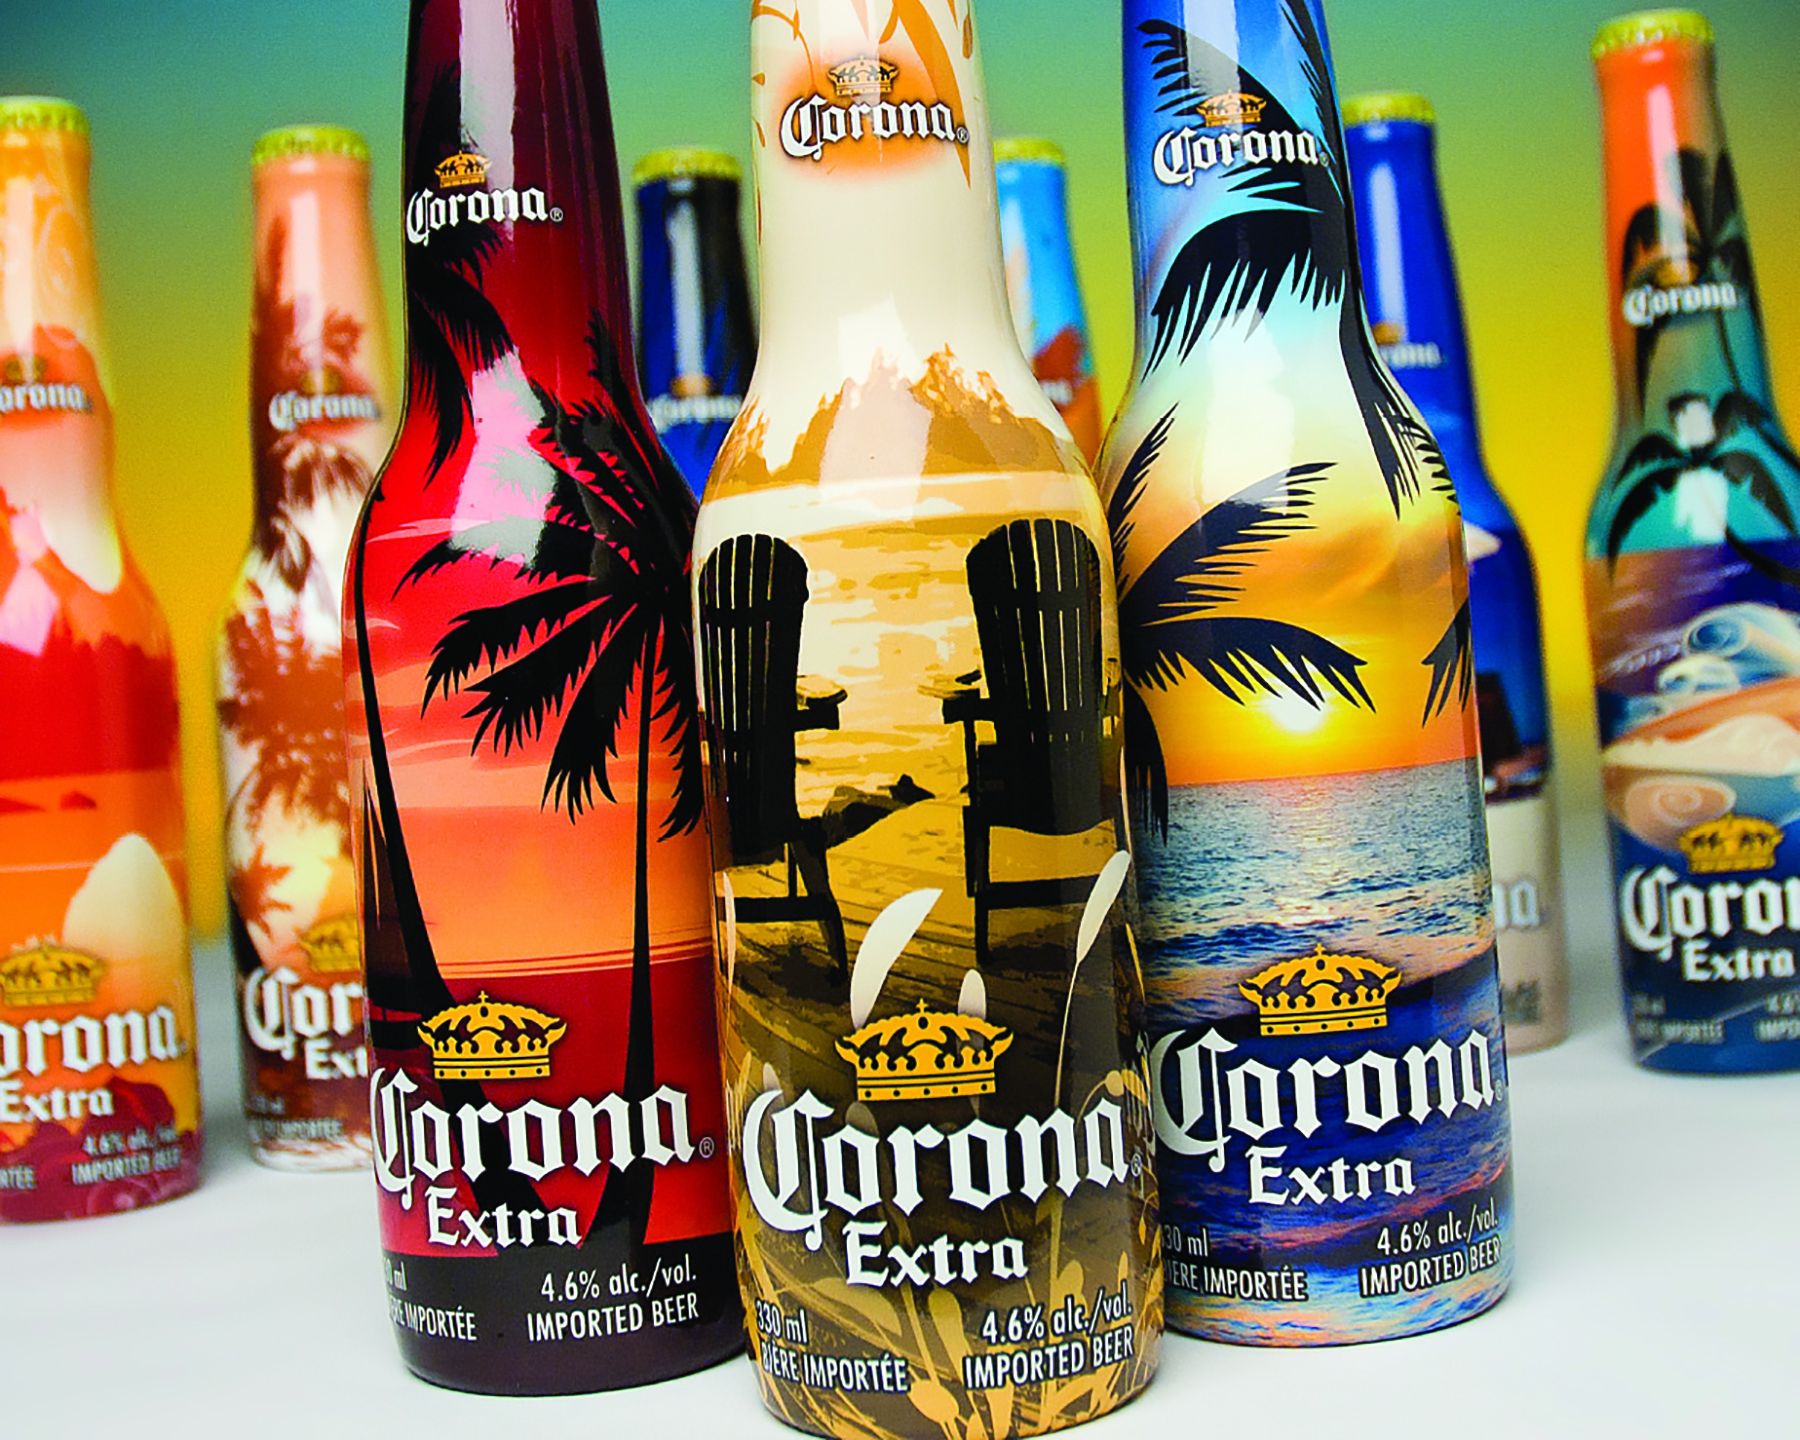 Extra limited. Corona Extra дизайн. Пиво корона в упаковке. Напиток nice.